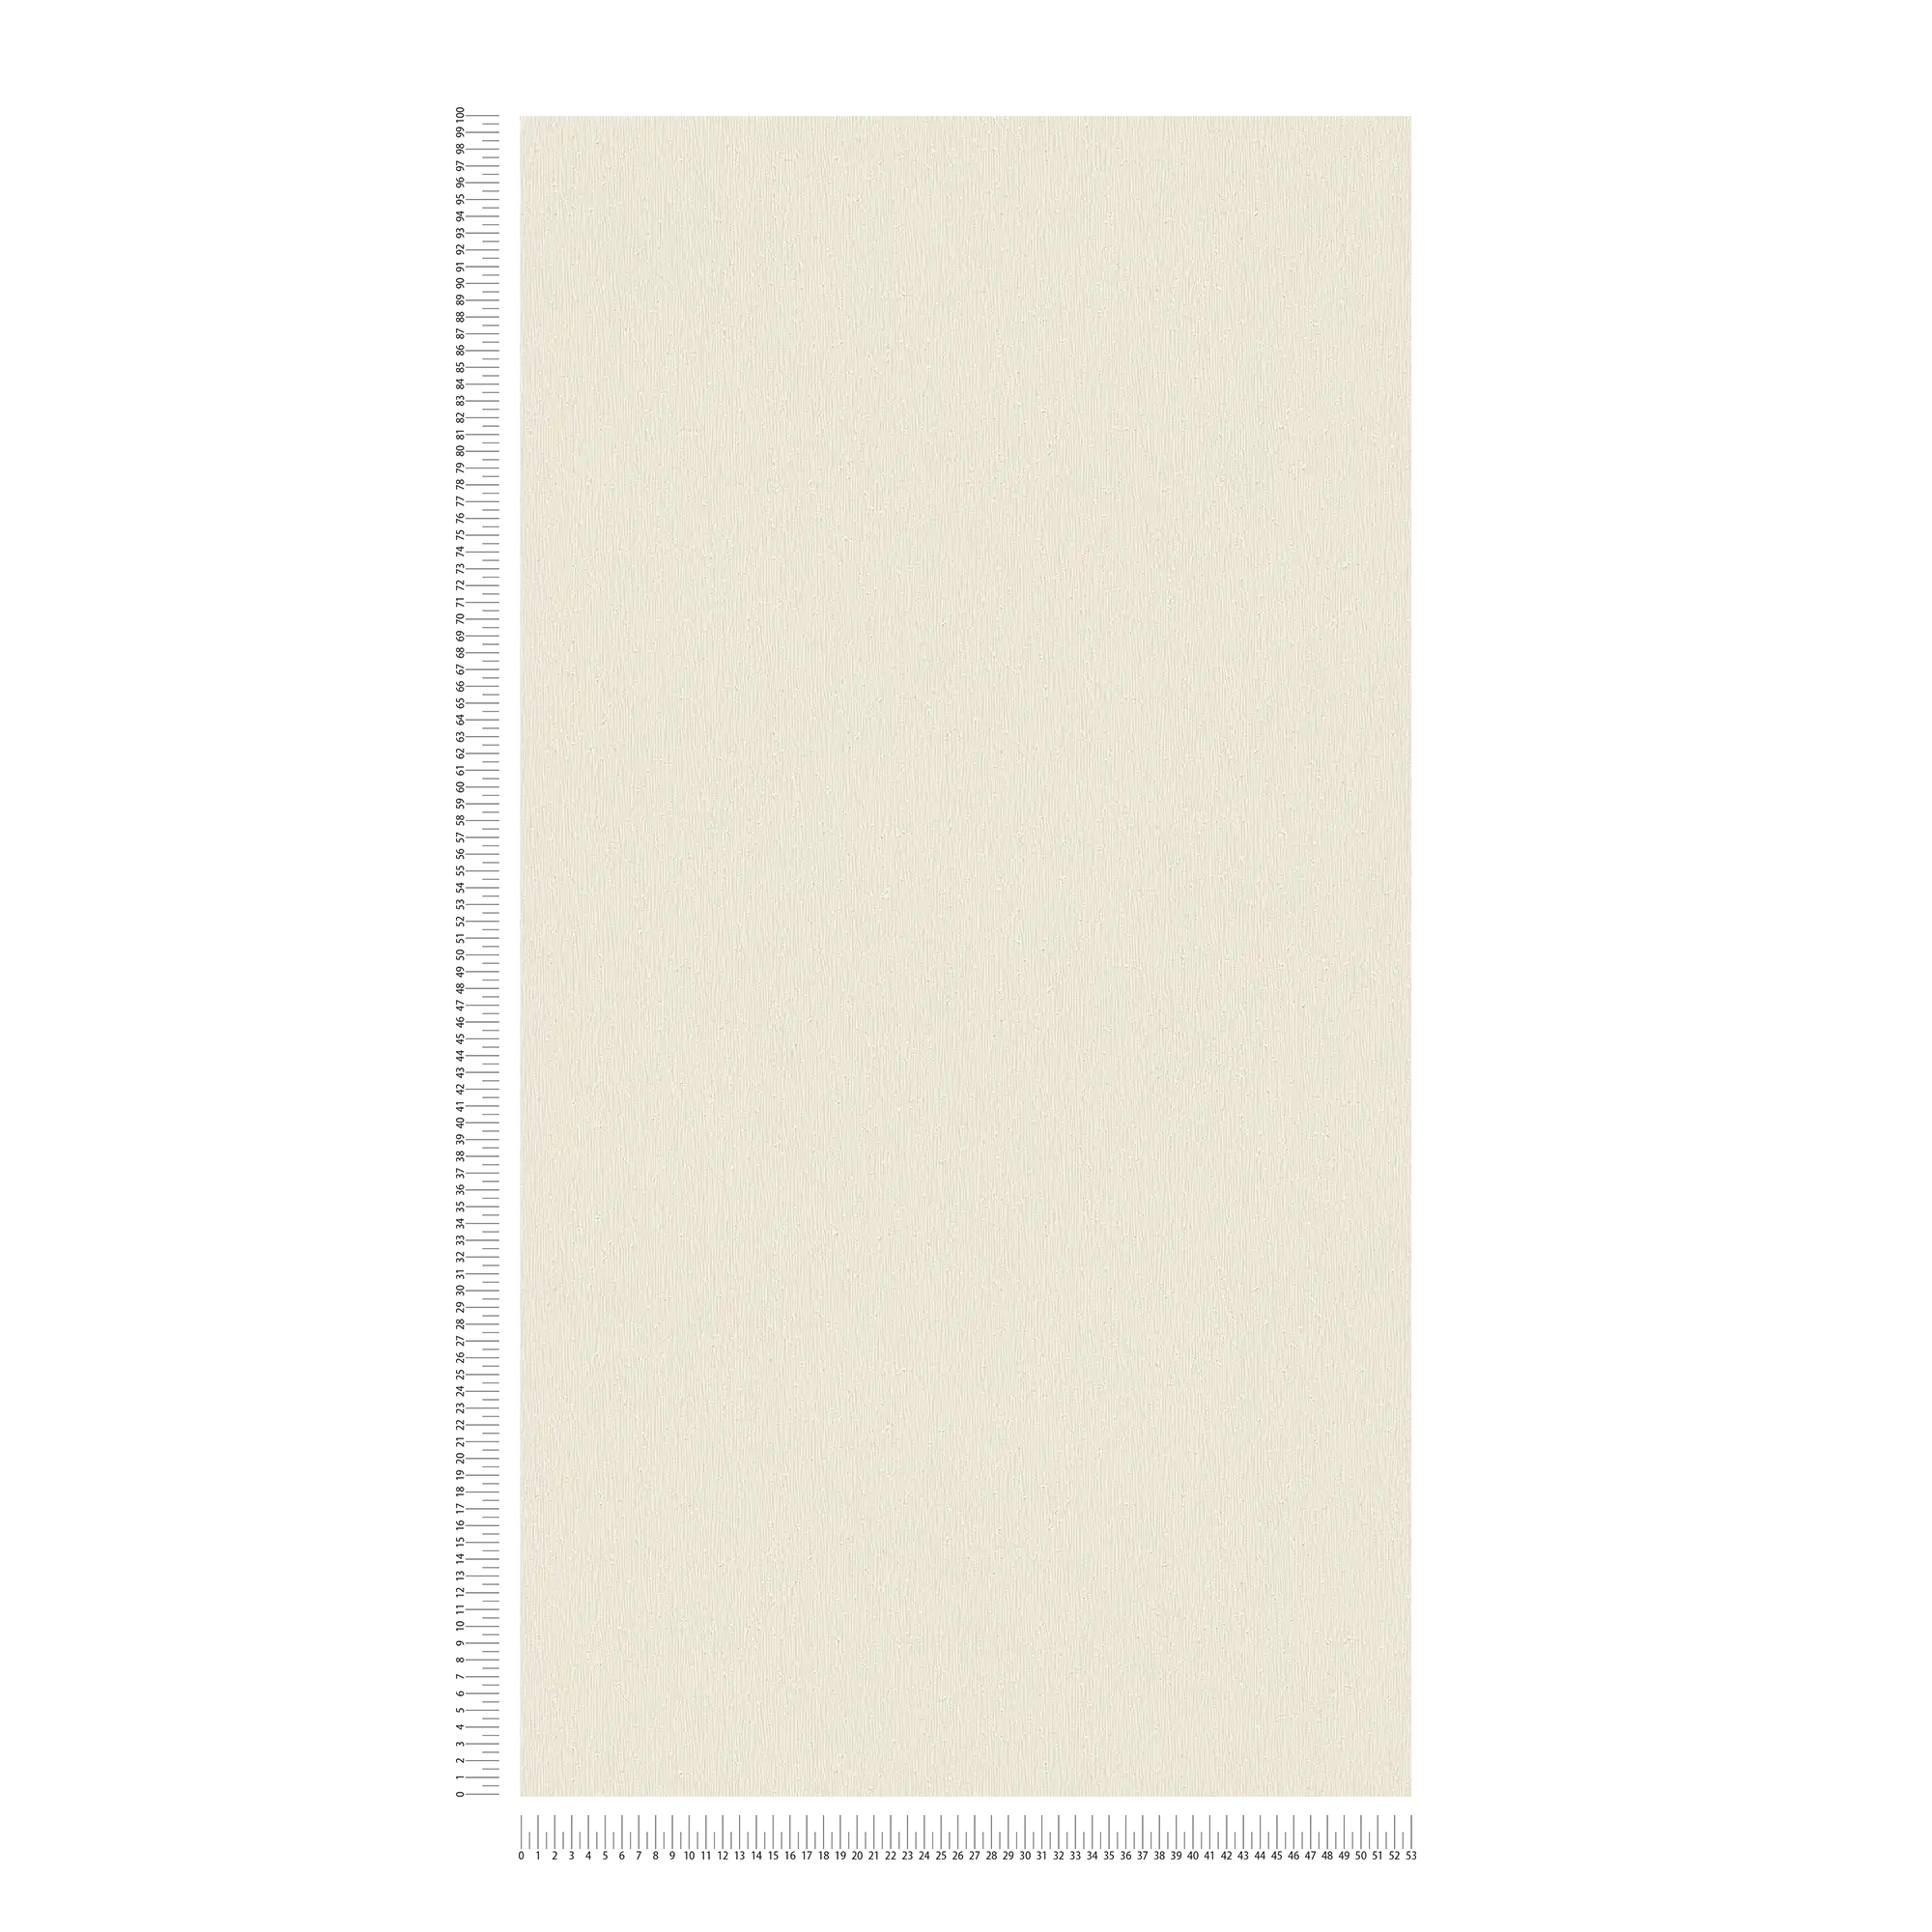             Cremefarbene Vliestapete mit einfarbigem Strukturdesign – Creme, Weiß
        